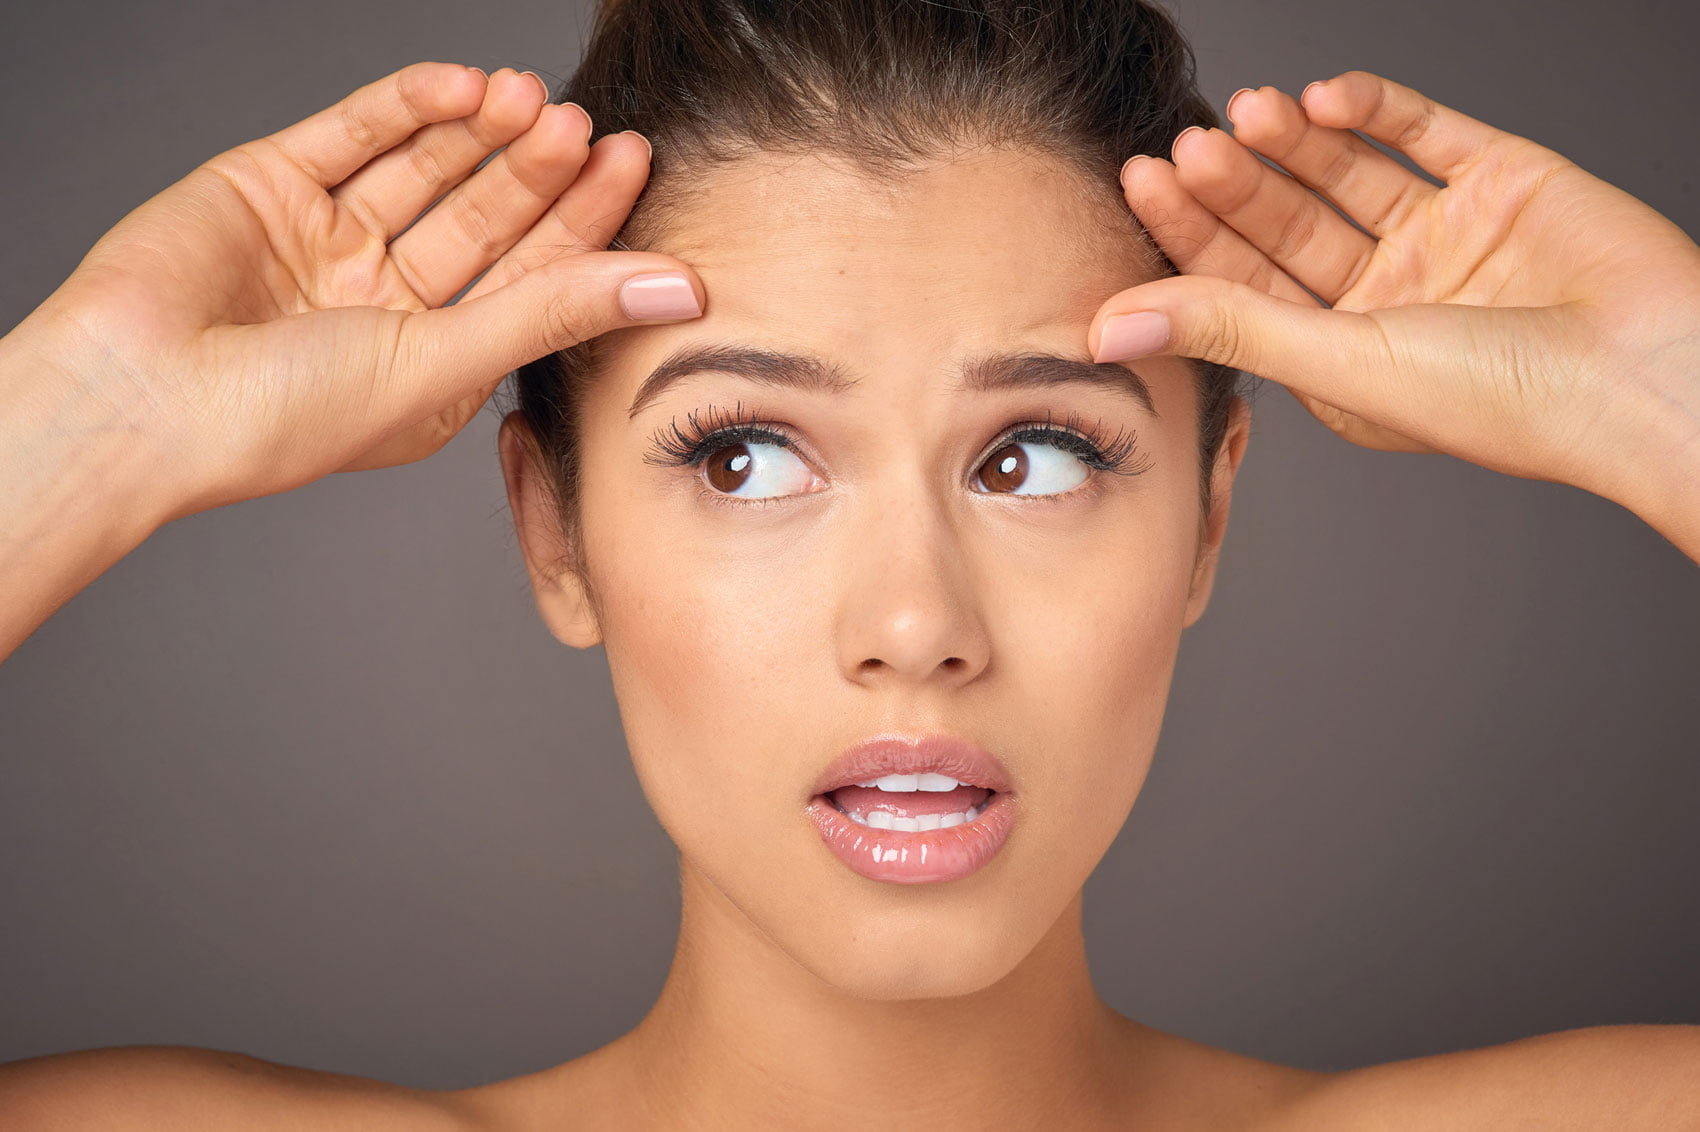 Rughe del viso: 10 rimedi naturali fai da te anti aging